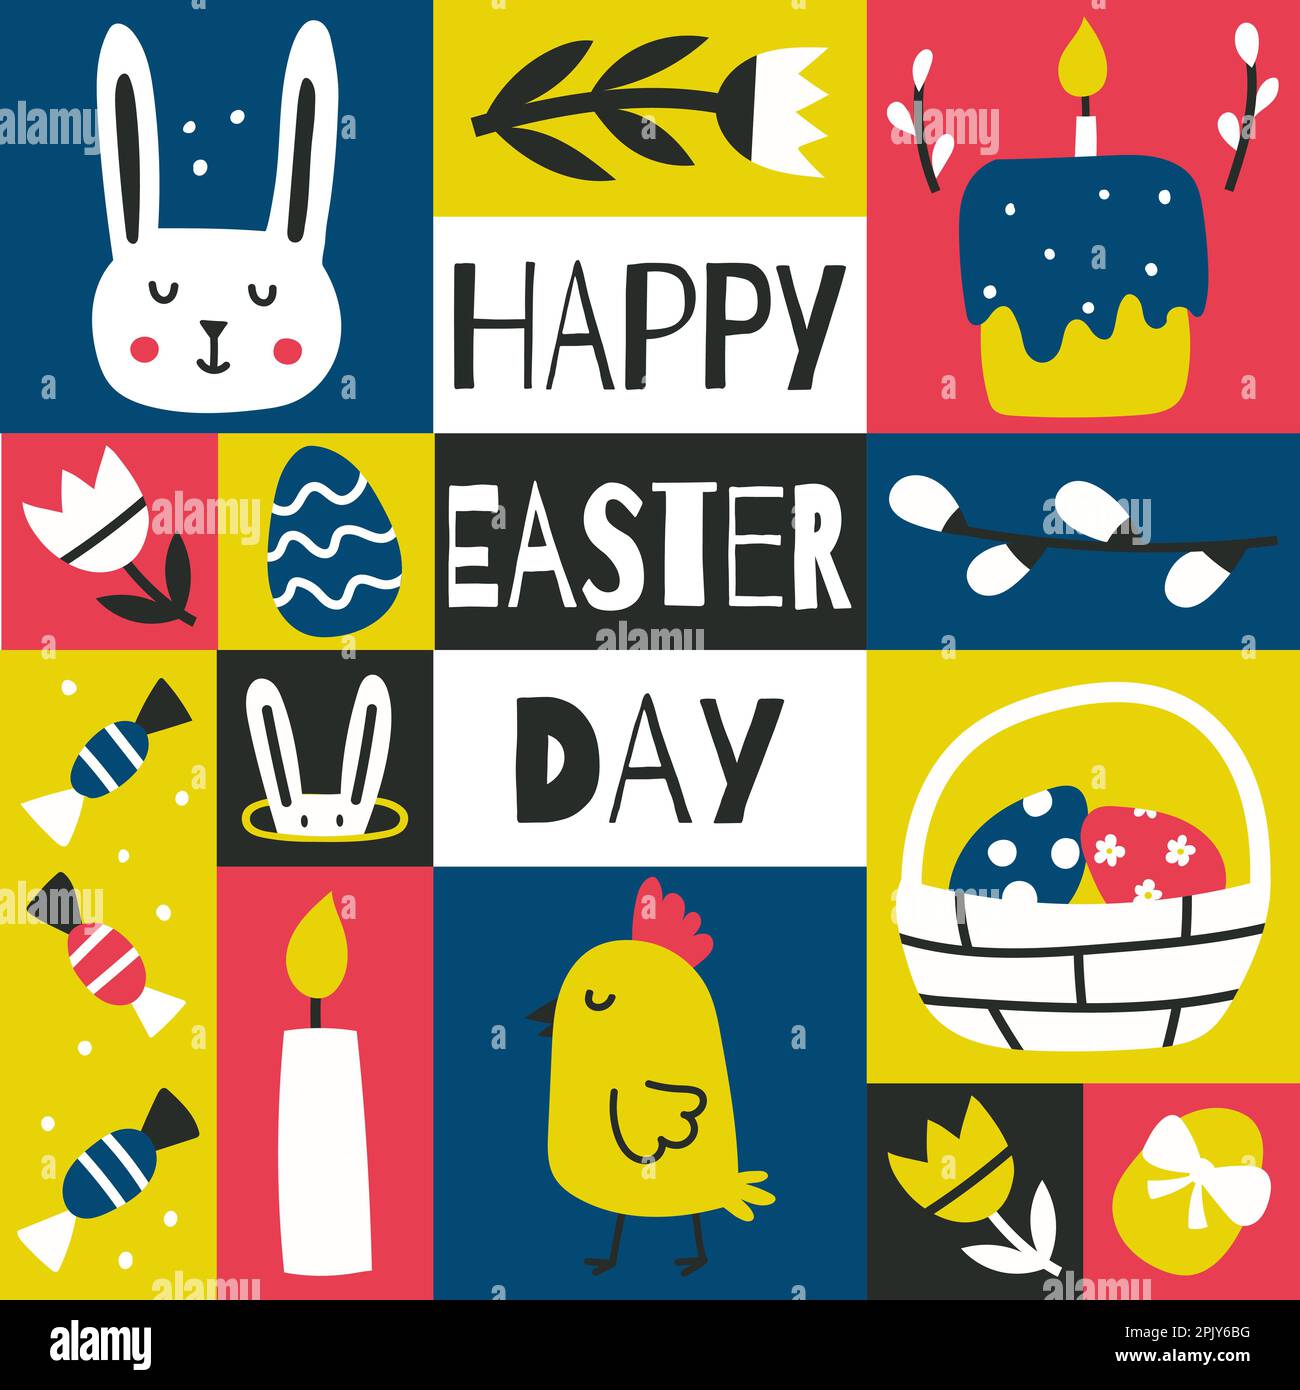 Carte de vœux de Pâques, affiche graphique carrée avec symboles Pâques. Lapin, panier, œufs, bonbons. Carte colorée et contrastée avec décoration en chidish à main levée Illustration de Vecteur